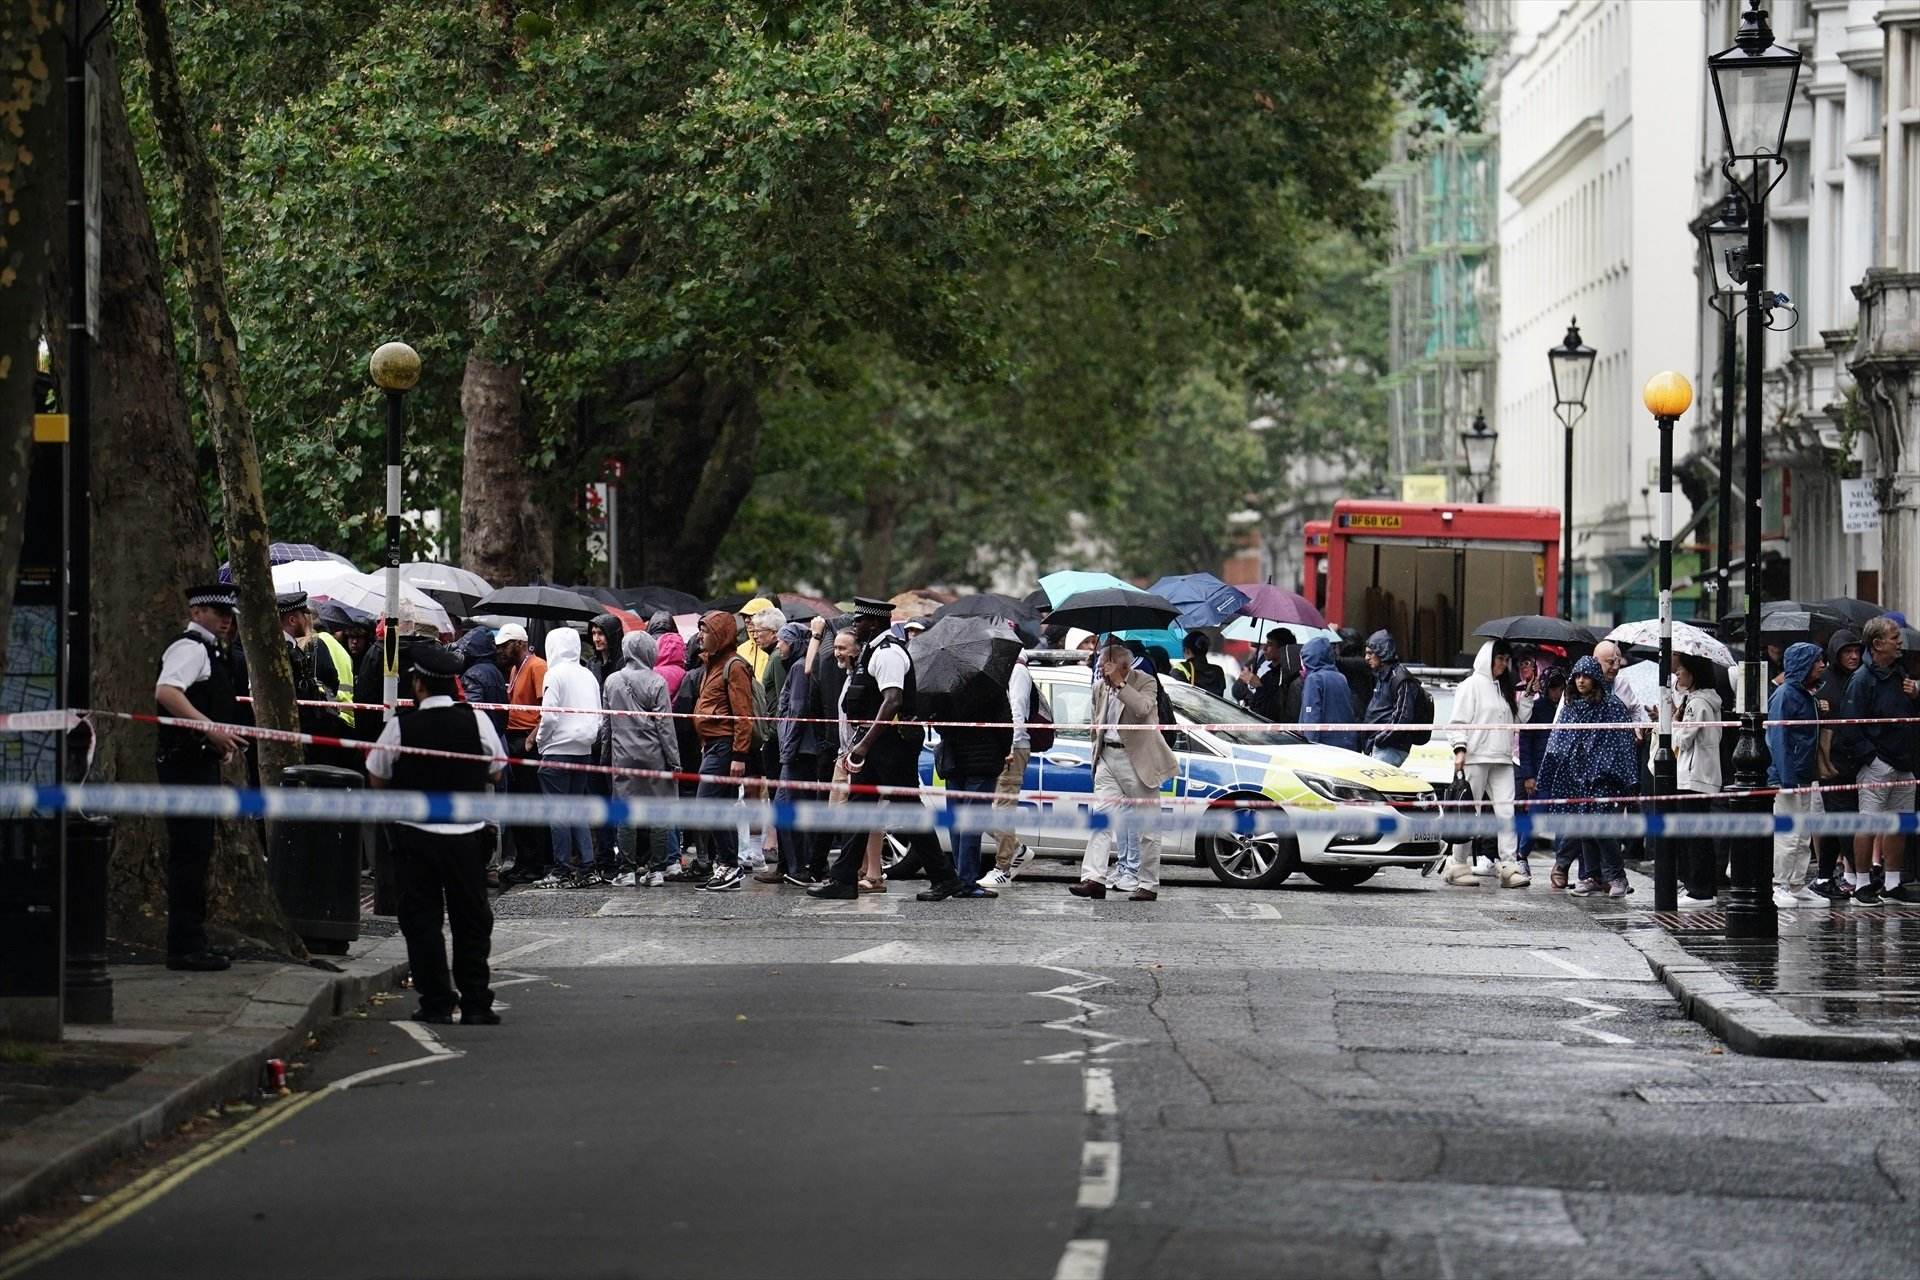 La policia patrulla al Museu Britànic de Londres després que un home fos detingut com a sospitós de causar danys corporals greus després que un home fos apunyalat a prop del museu / Jordan Pettitt - PA Wire - dpa